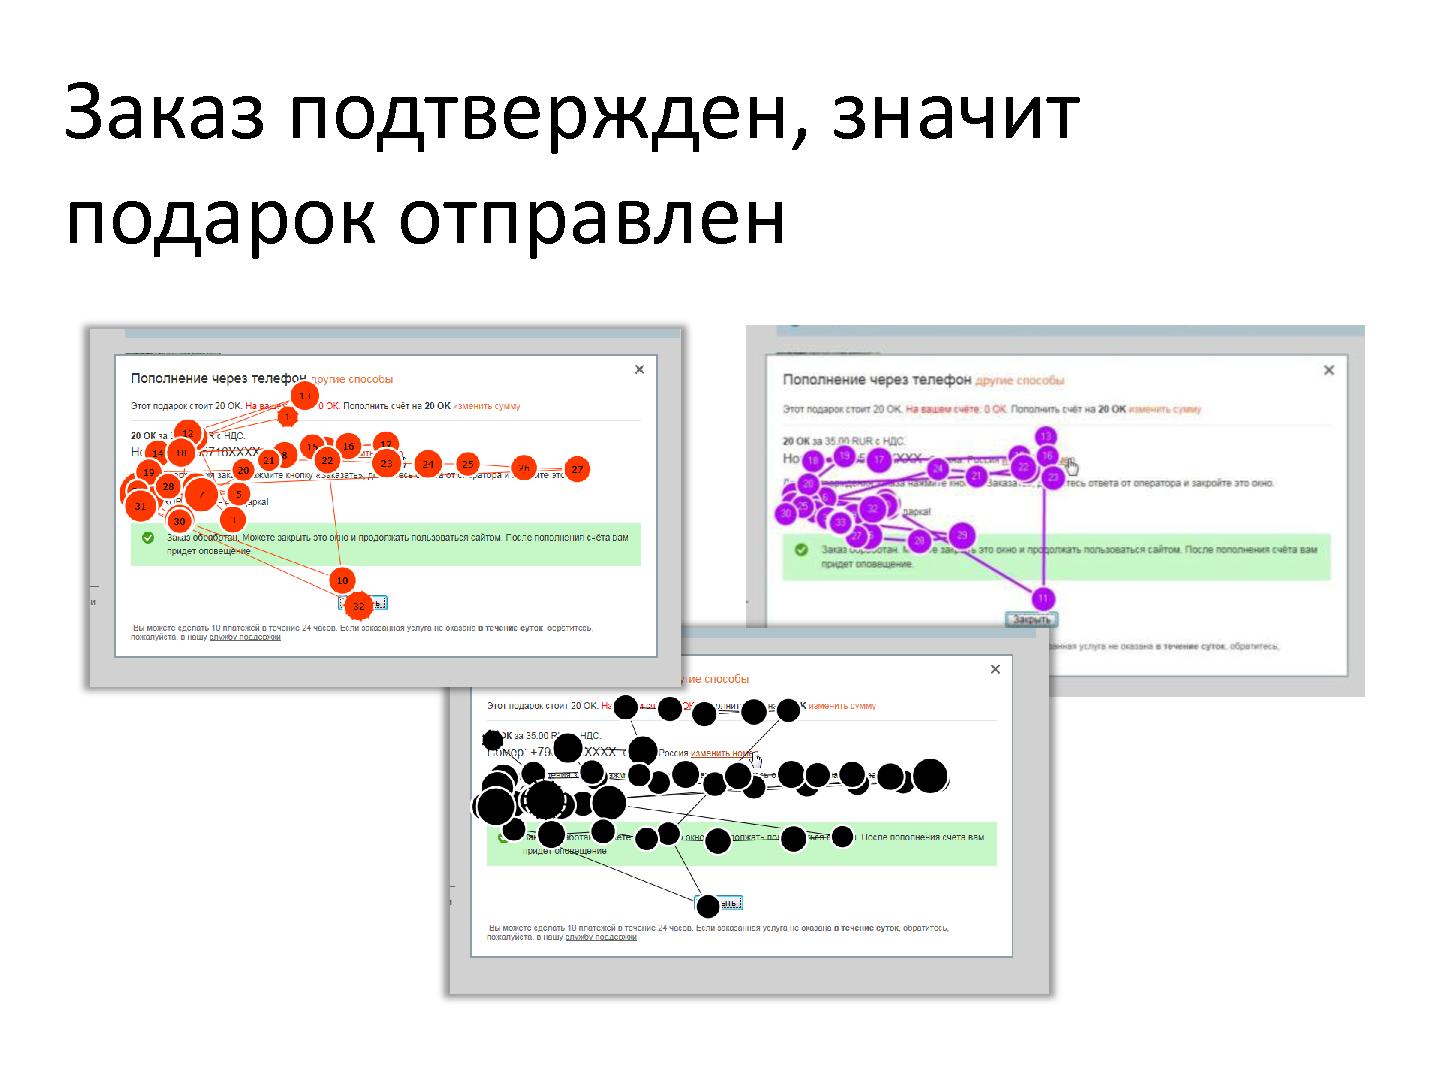 Файл:Выбор правильных методов исследования. Опыт UX-лаборатории Mail.Ru (Наталья Спрогис).pdf